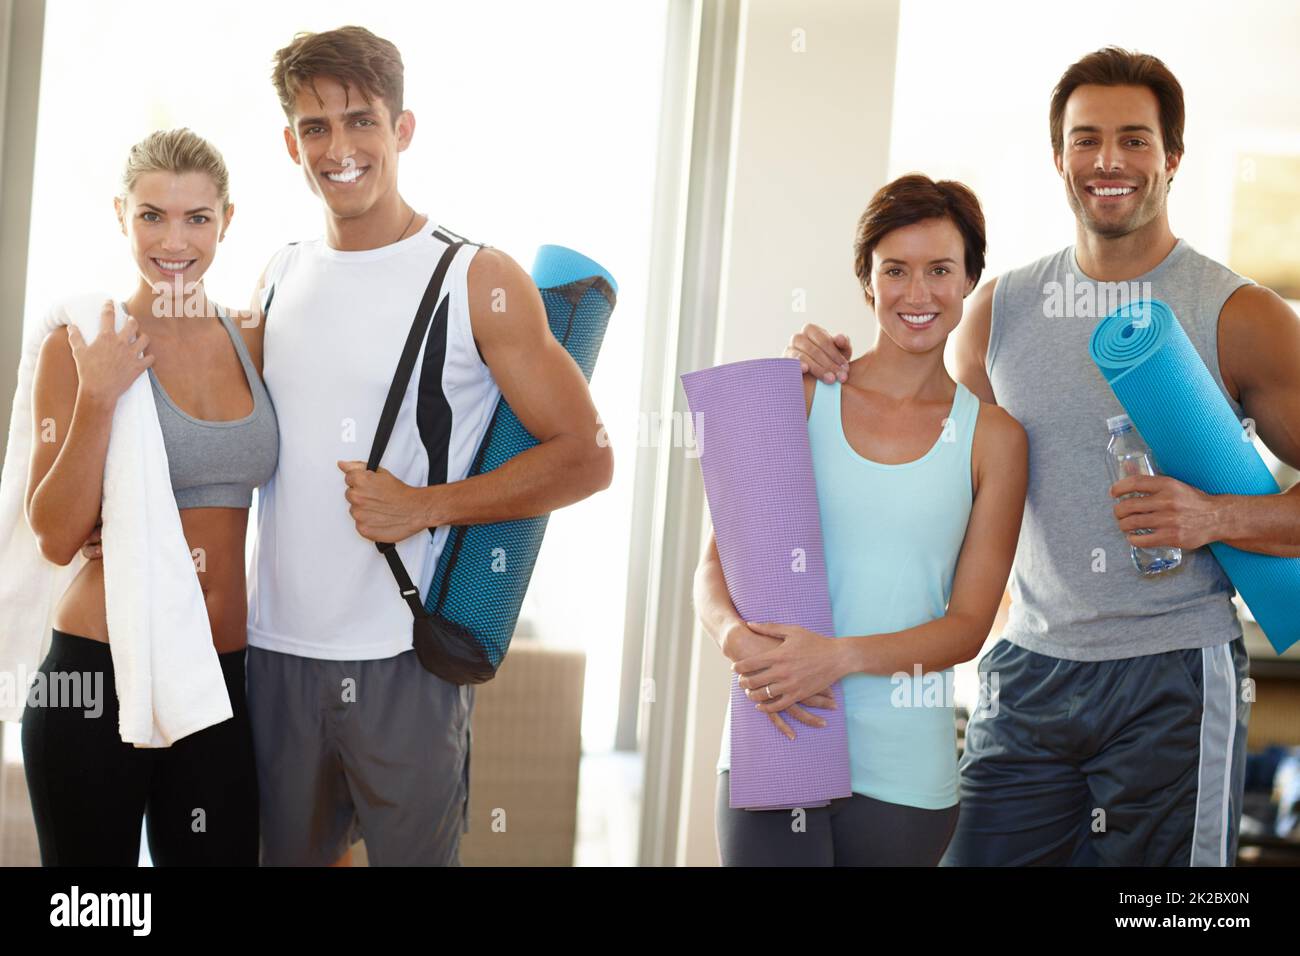 Teil eines Fitness-Teams. Porträt von vier jungen Erwachsenen, die mit ihrer Yoga-Ausrüstung lächeln. Stockfoto